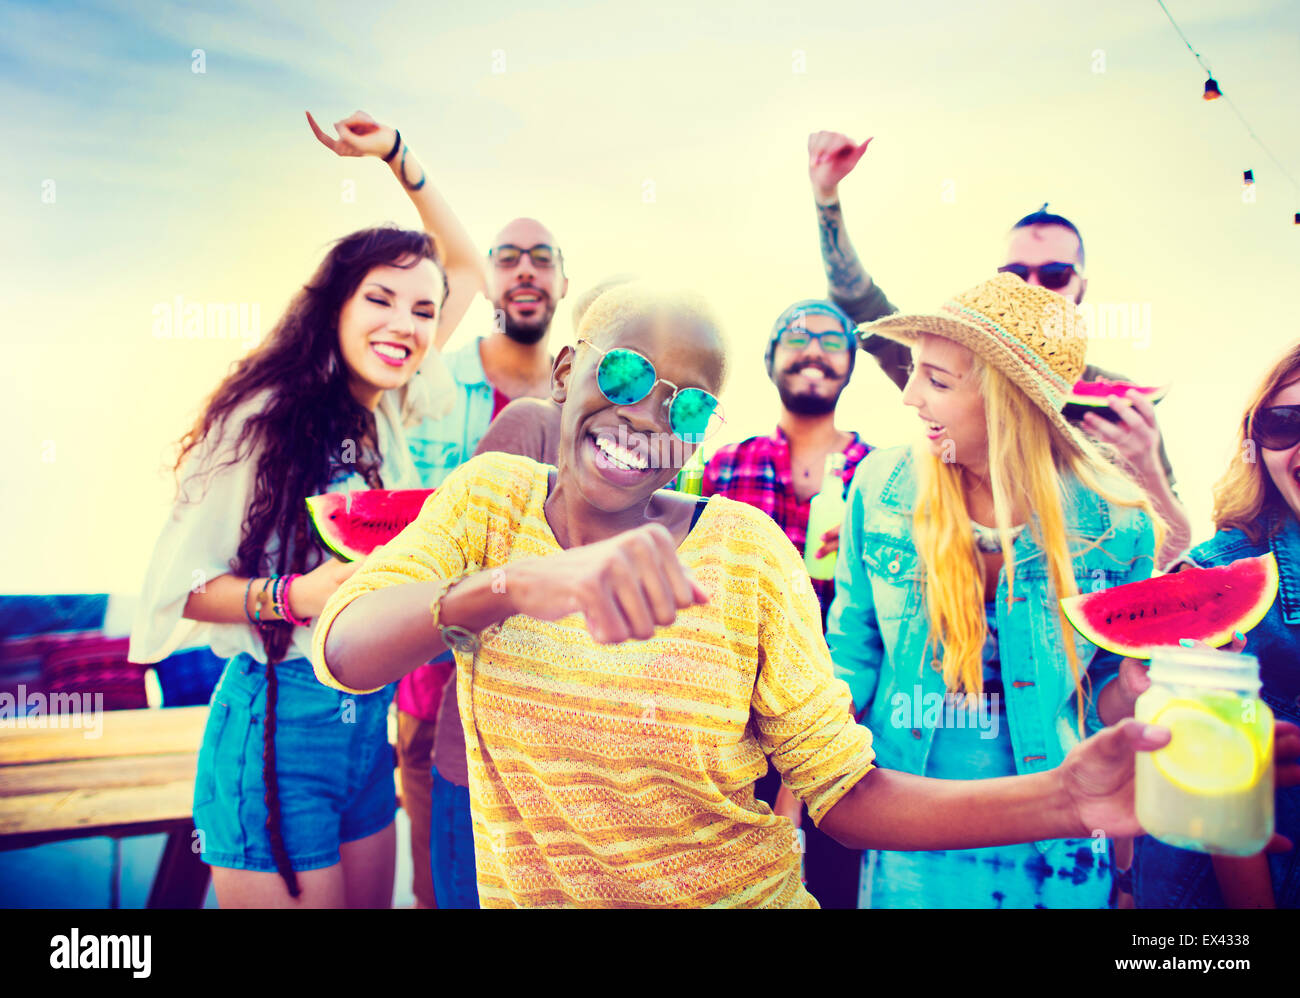 Jugendliche Freunde Beach Party Glück Konzept Stockfoto